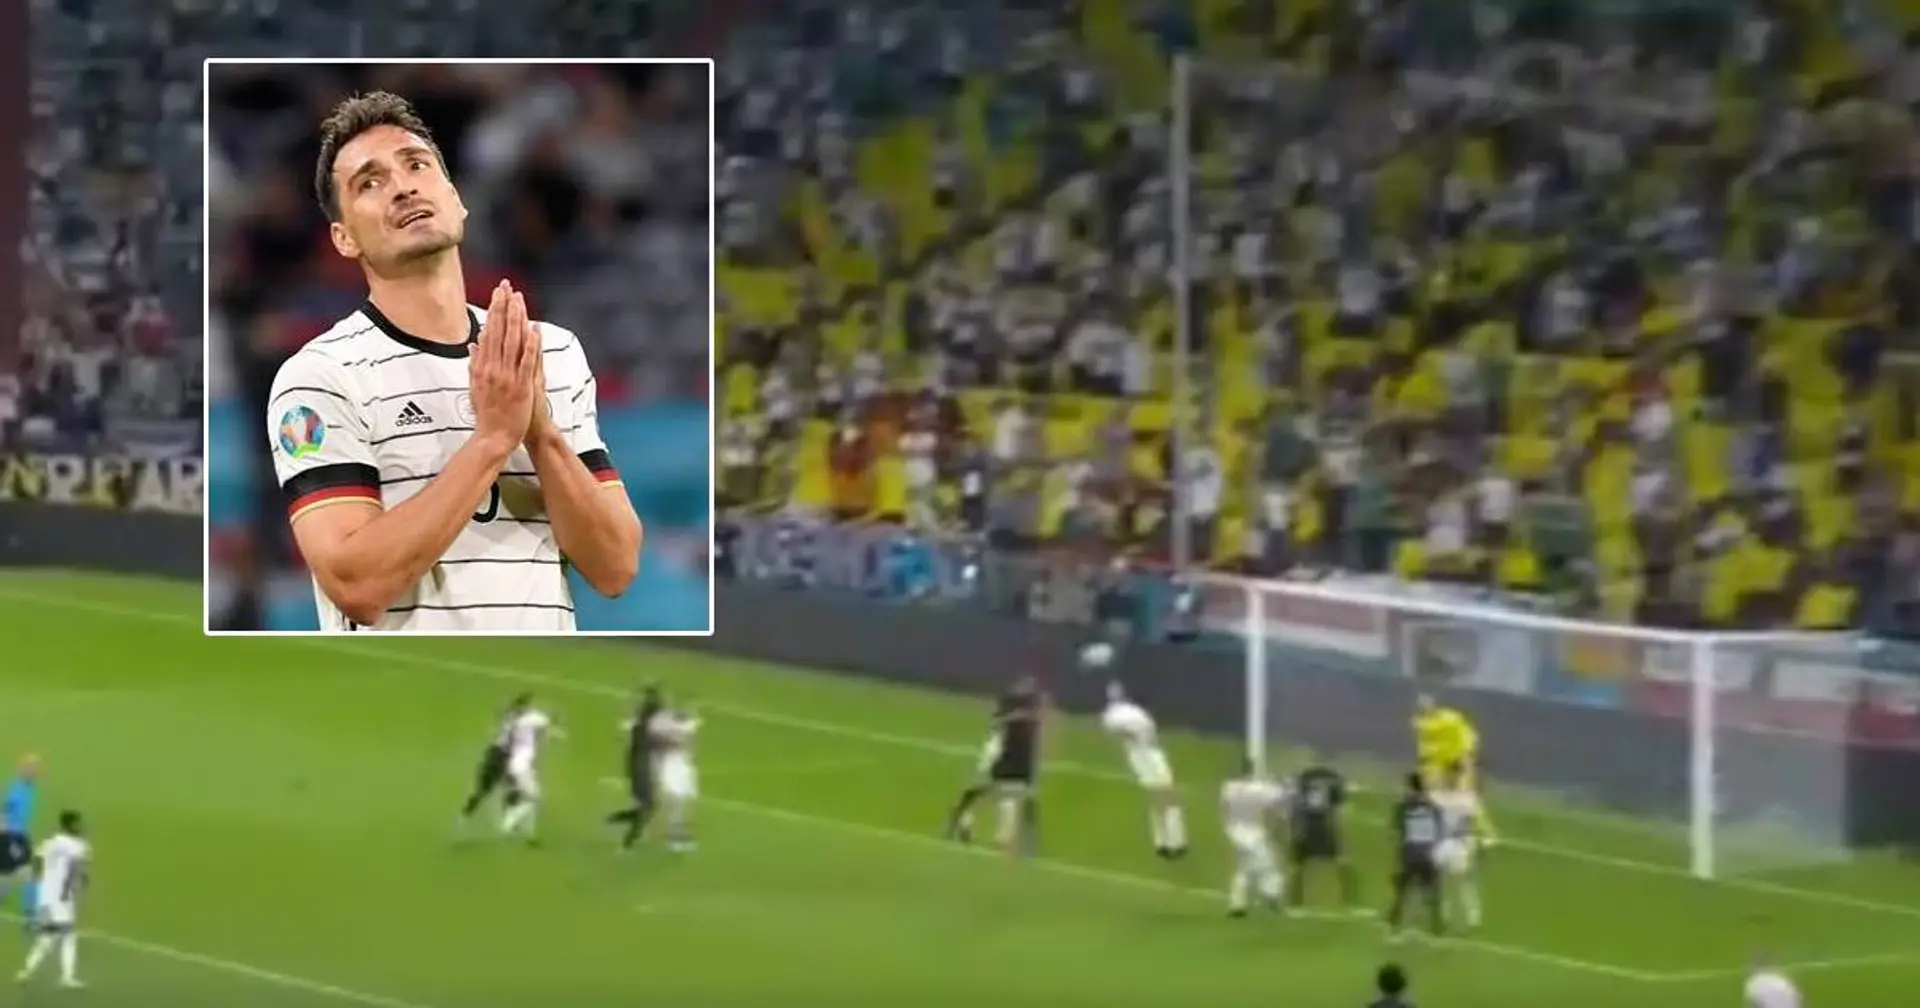 Das hätte der Ausgleich sein können: Mats Hummels trifft die Latte im Duell gegen Ungarn